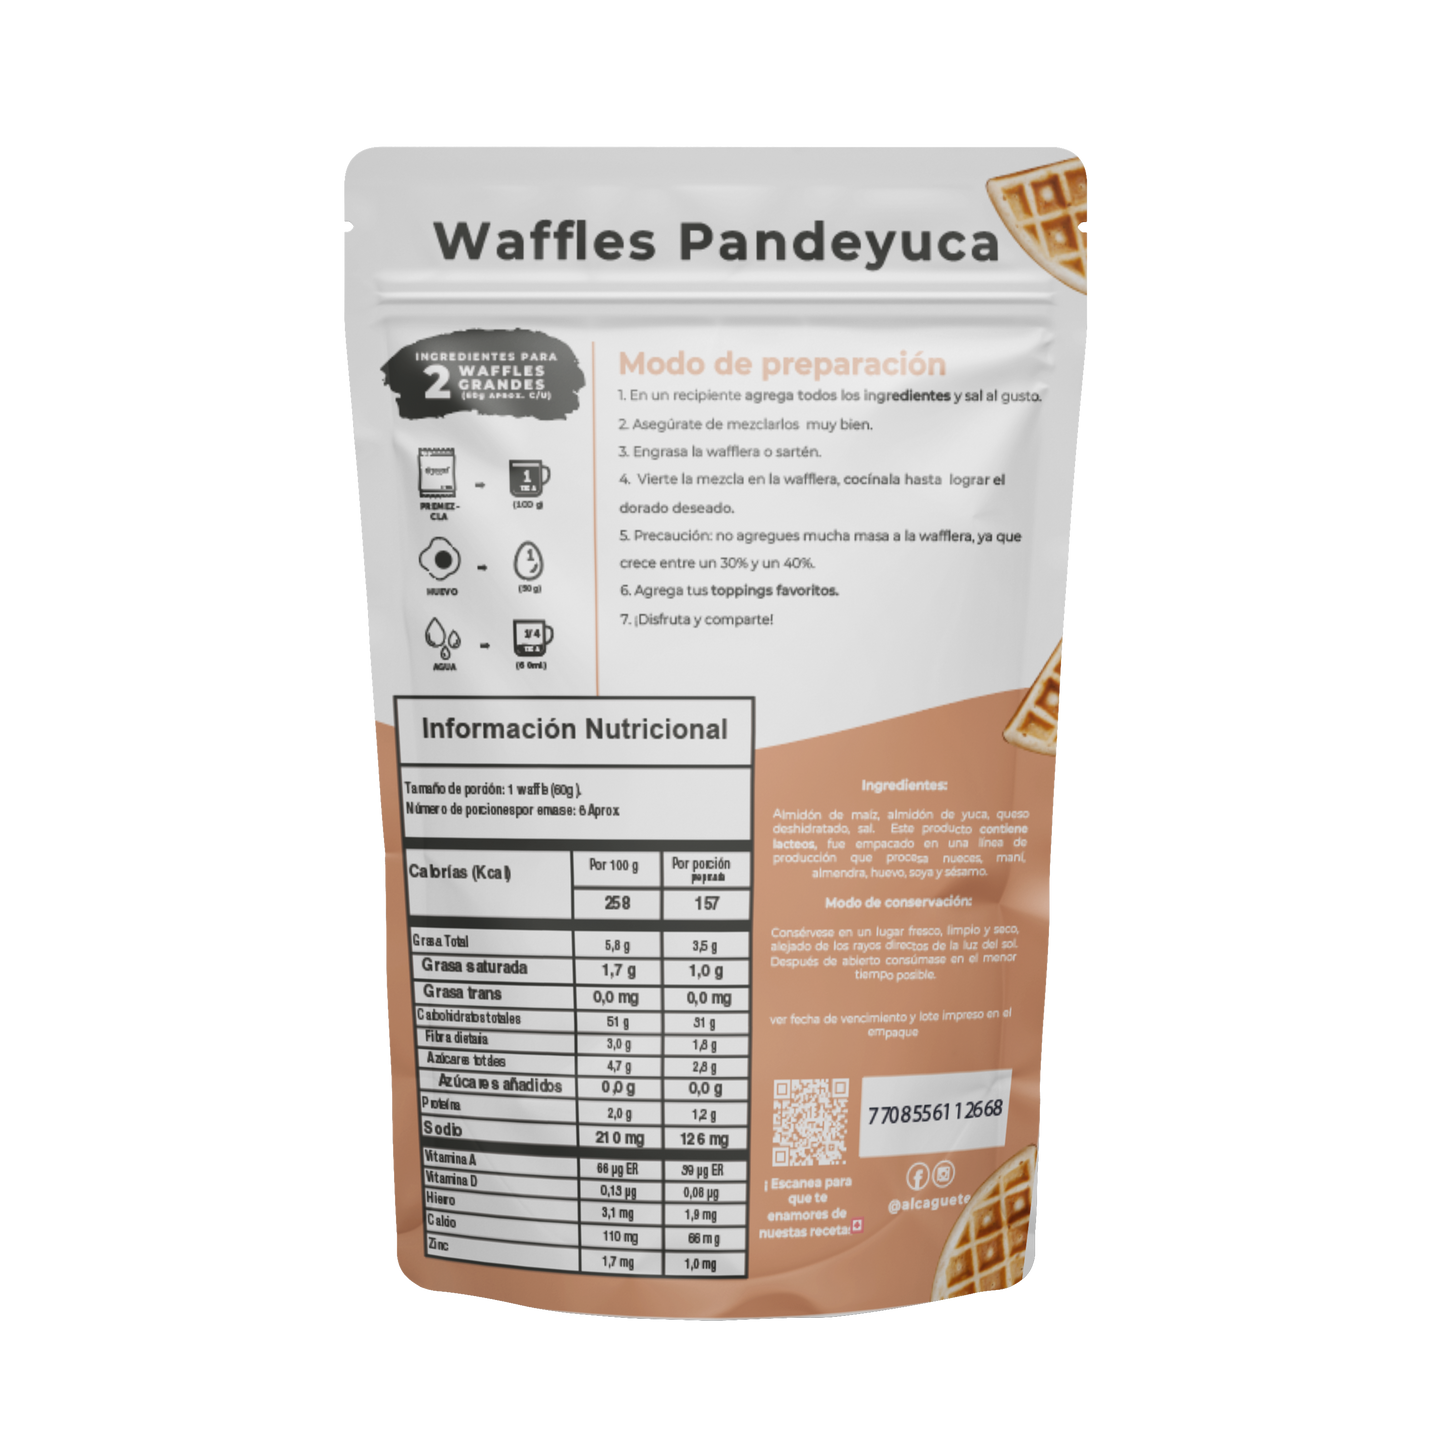 Premezcla Waffles Pan de yuca con Queso incluido 300g